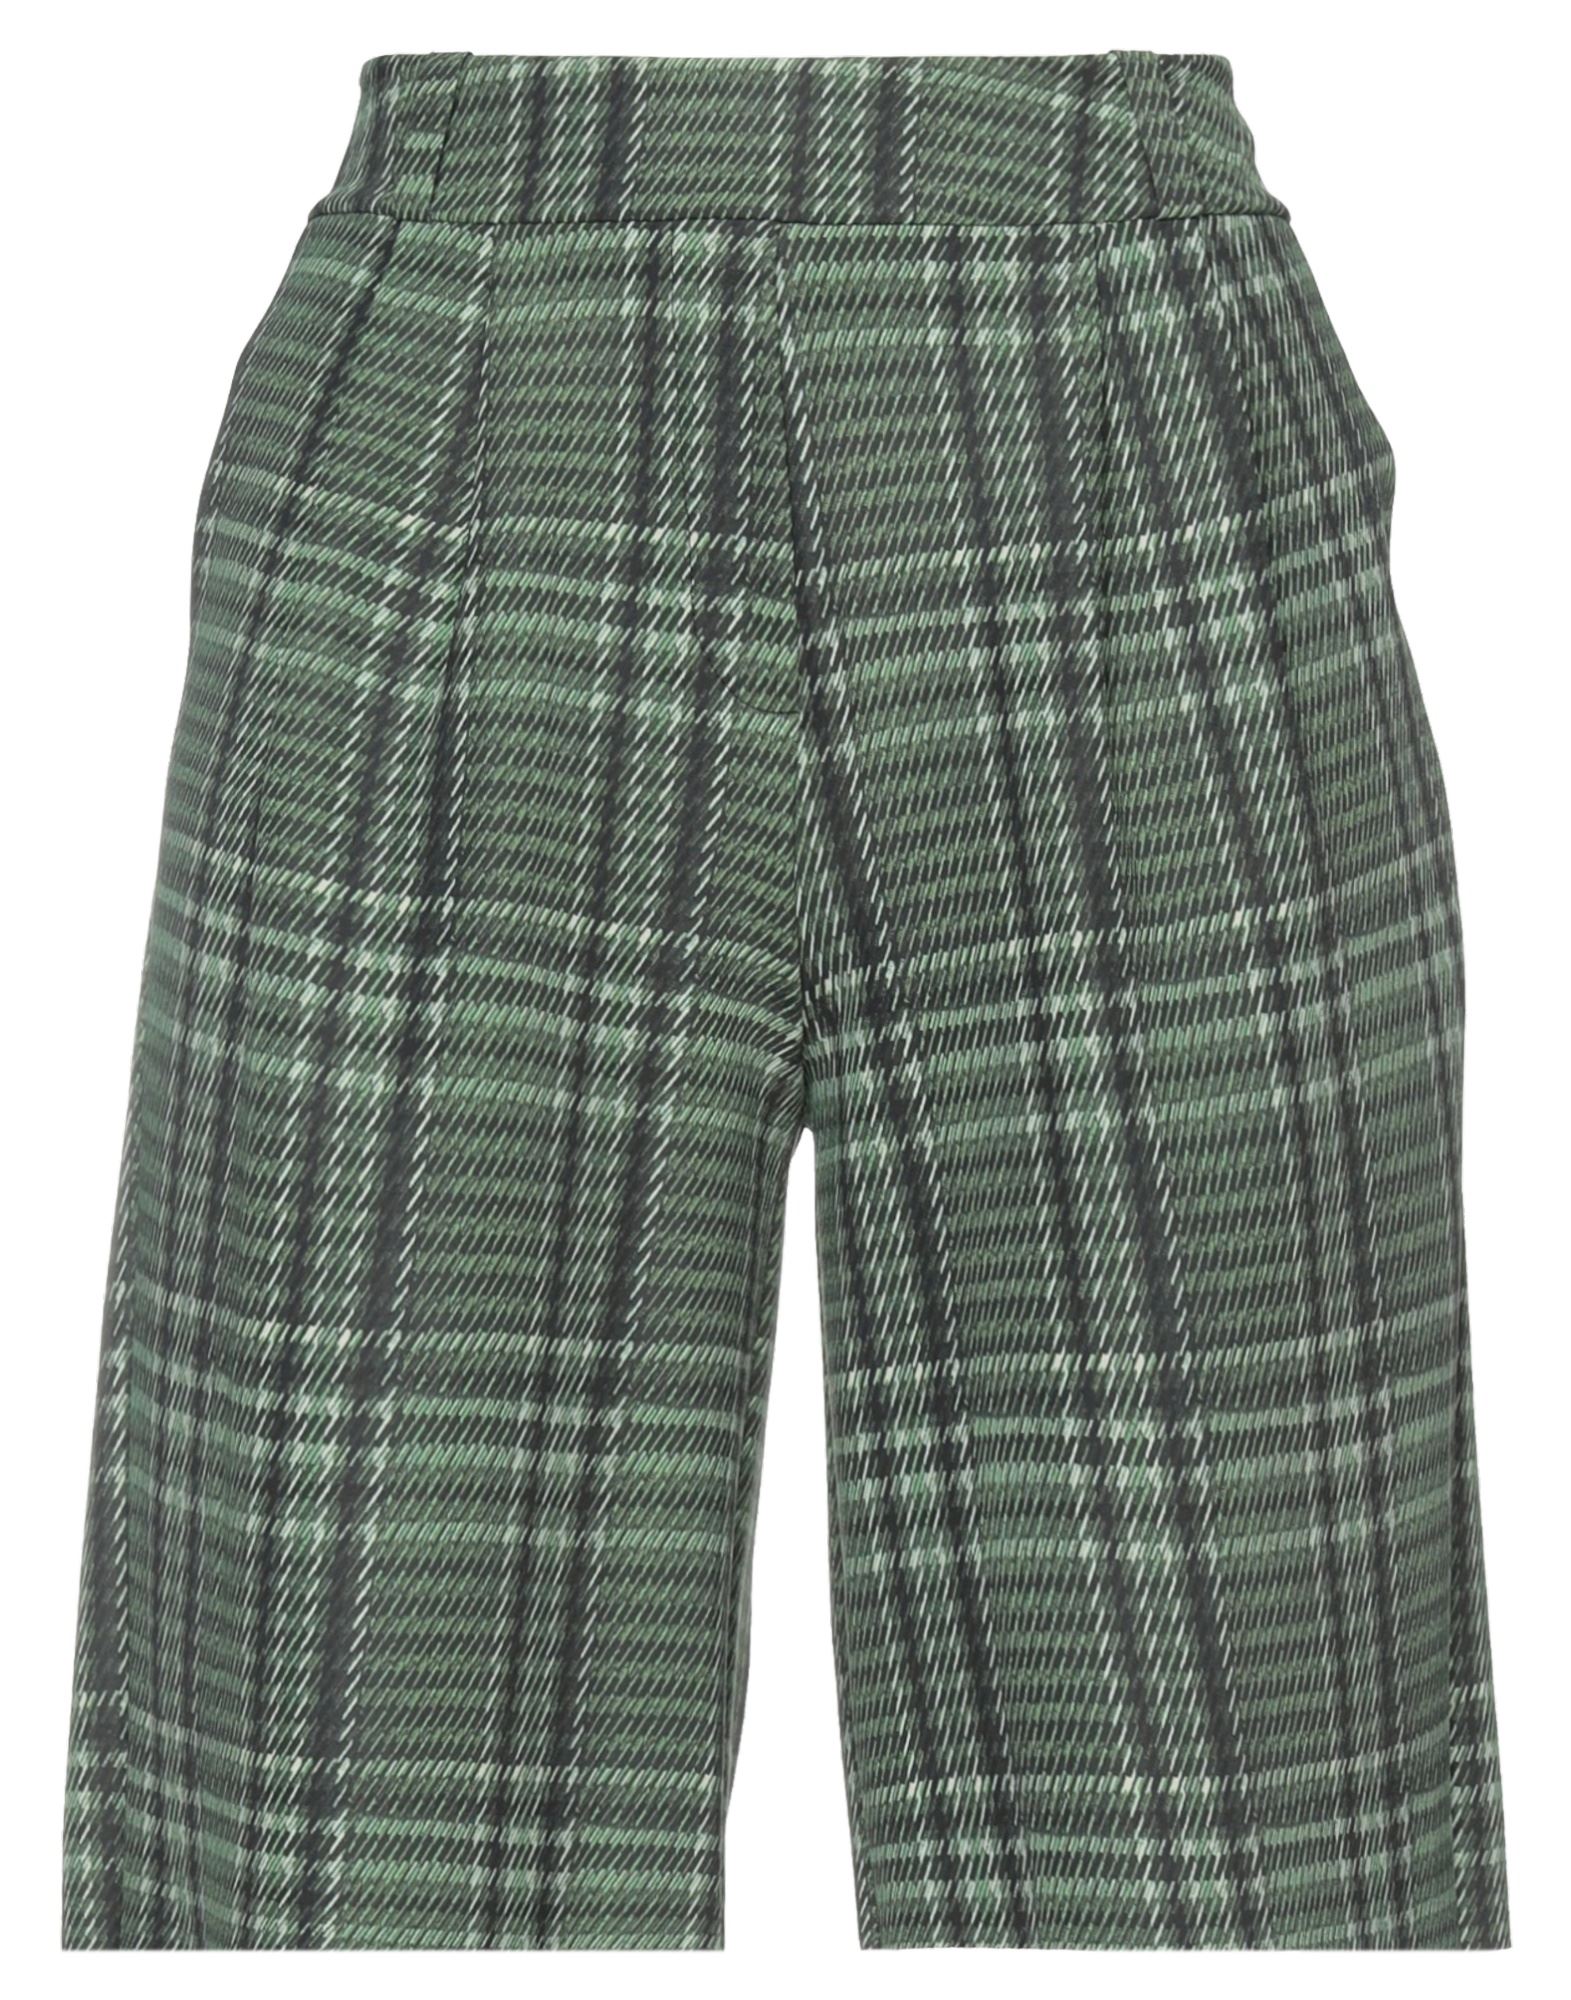 Chiara Boni La Petite Robe Woman Shorts & Bermuda Shorts Green Size 4 Polyamide, Elastane